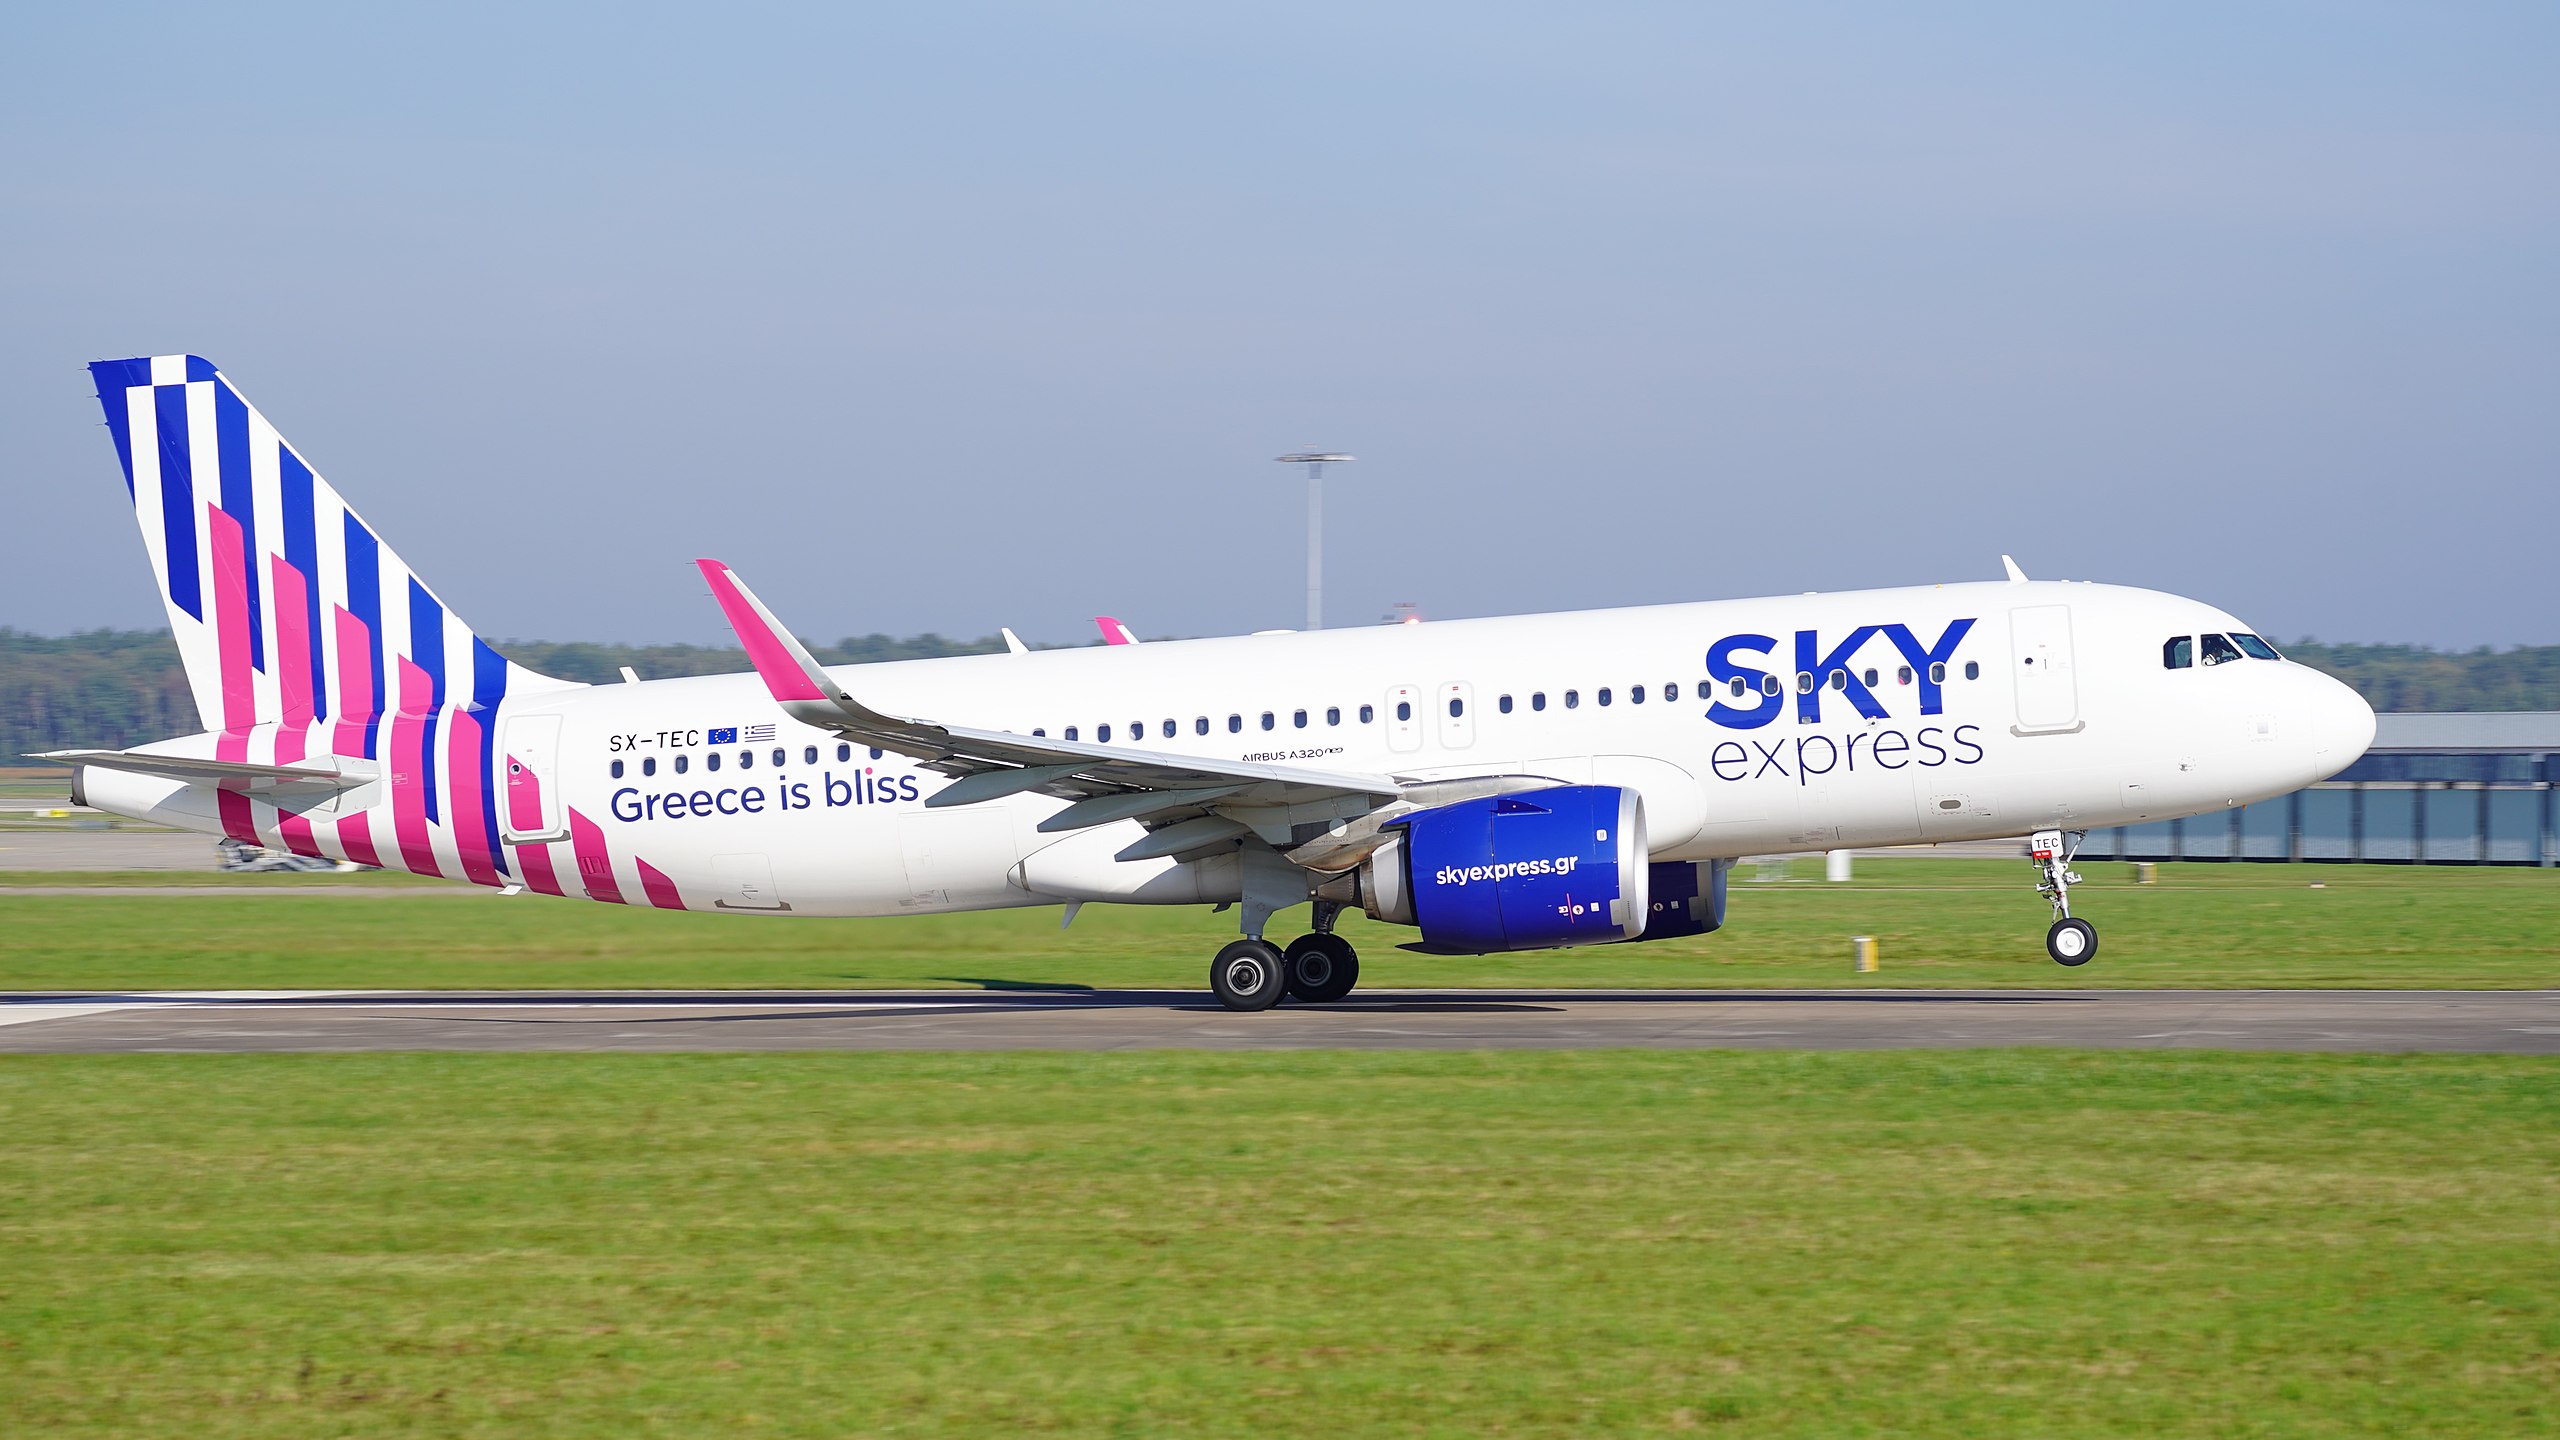 Η Sky Express ανακοίνωσε έως 50% έκπτωση σε πανέμορφους προορισμούς